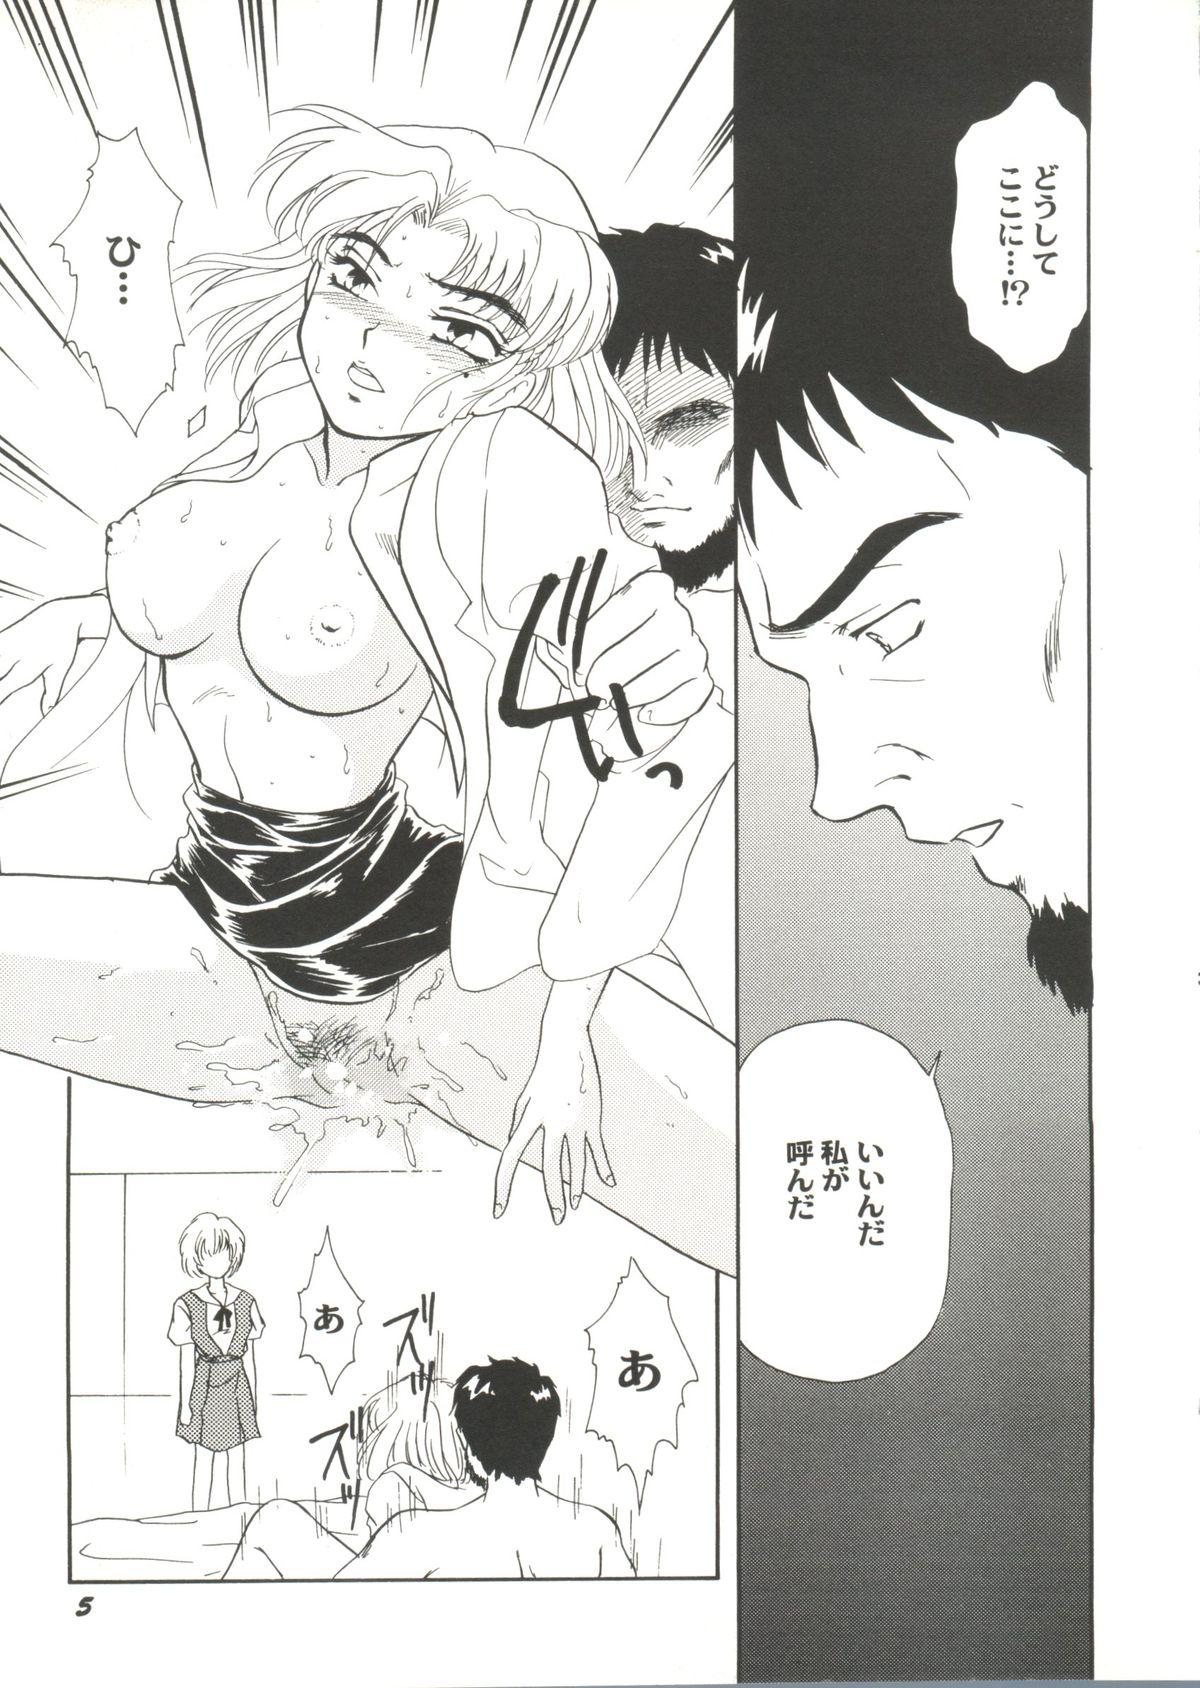 Hot Doujin Anthology Bishoujo Gumi 1 - Neon genesis evangelion Sailor moon Outlanders Latinos - Page 7